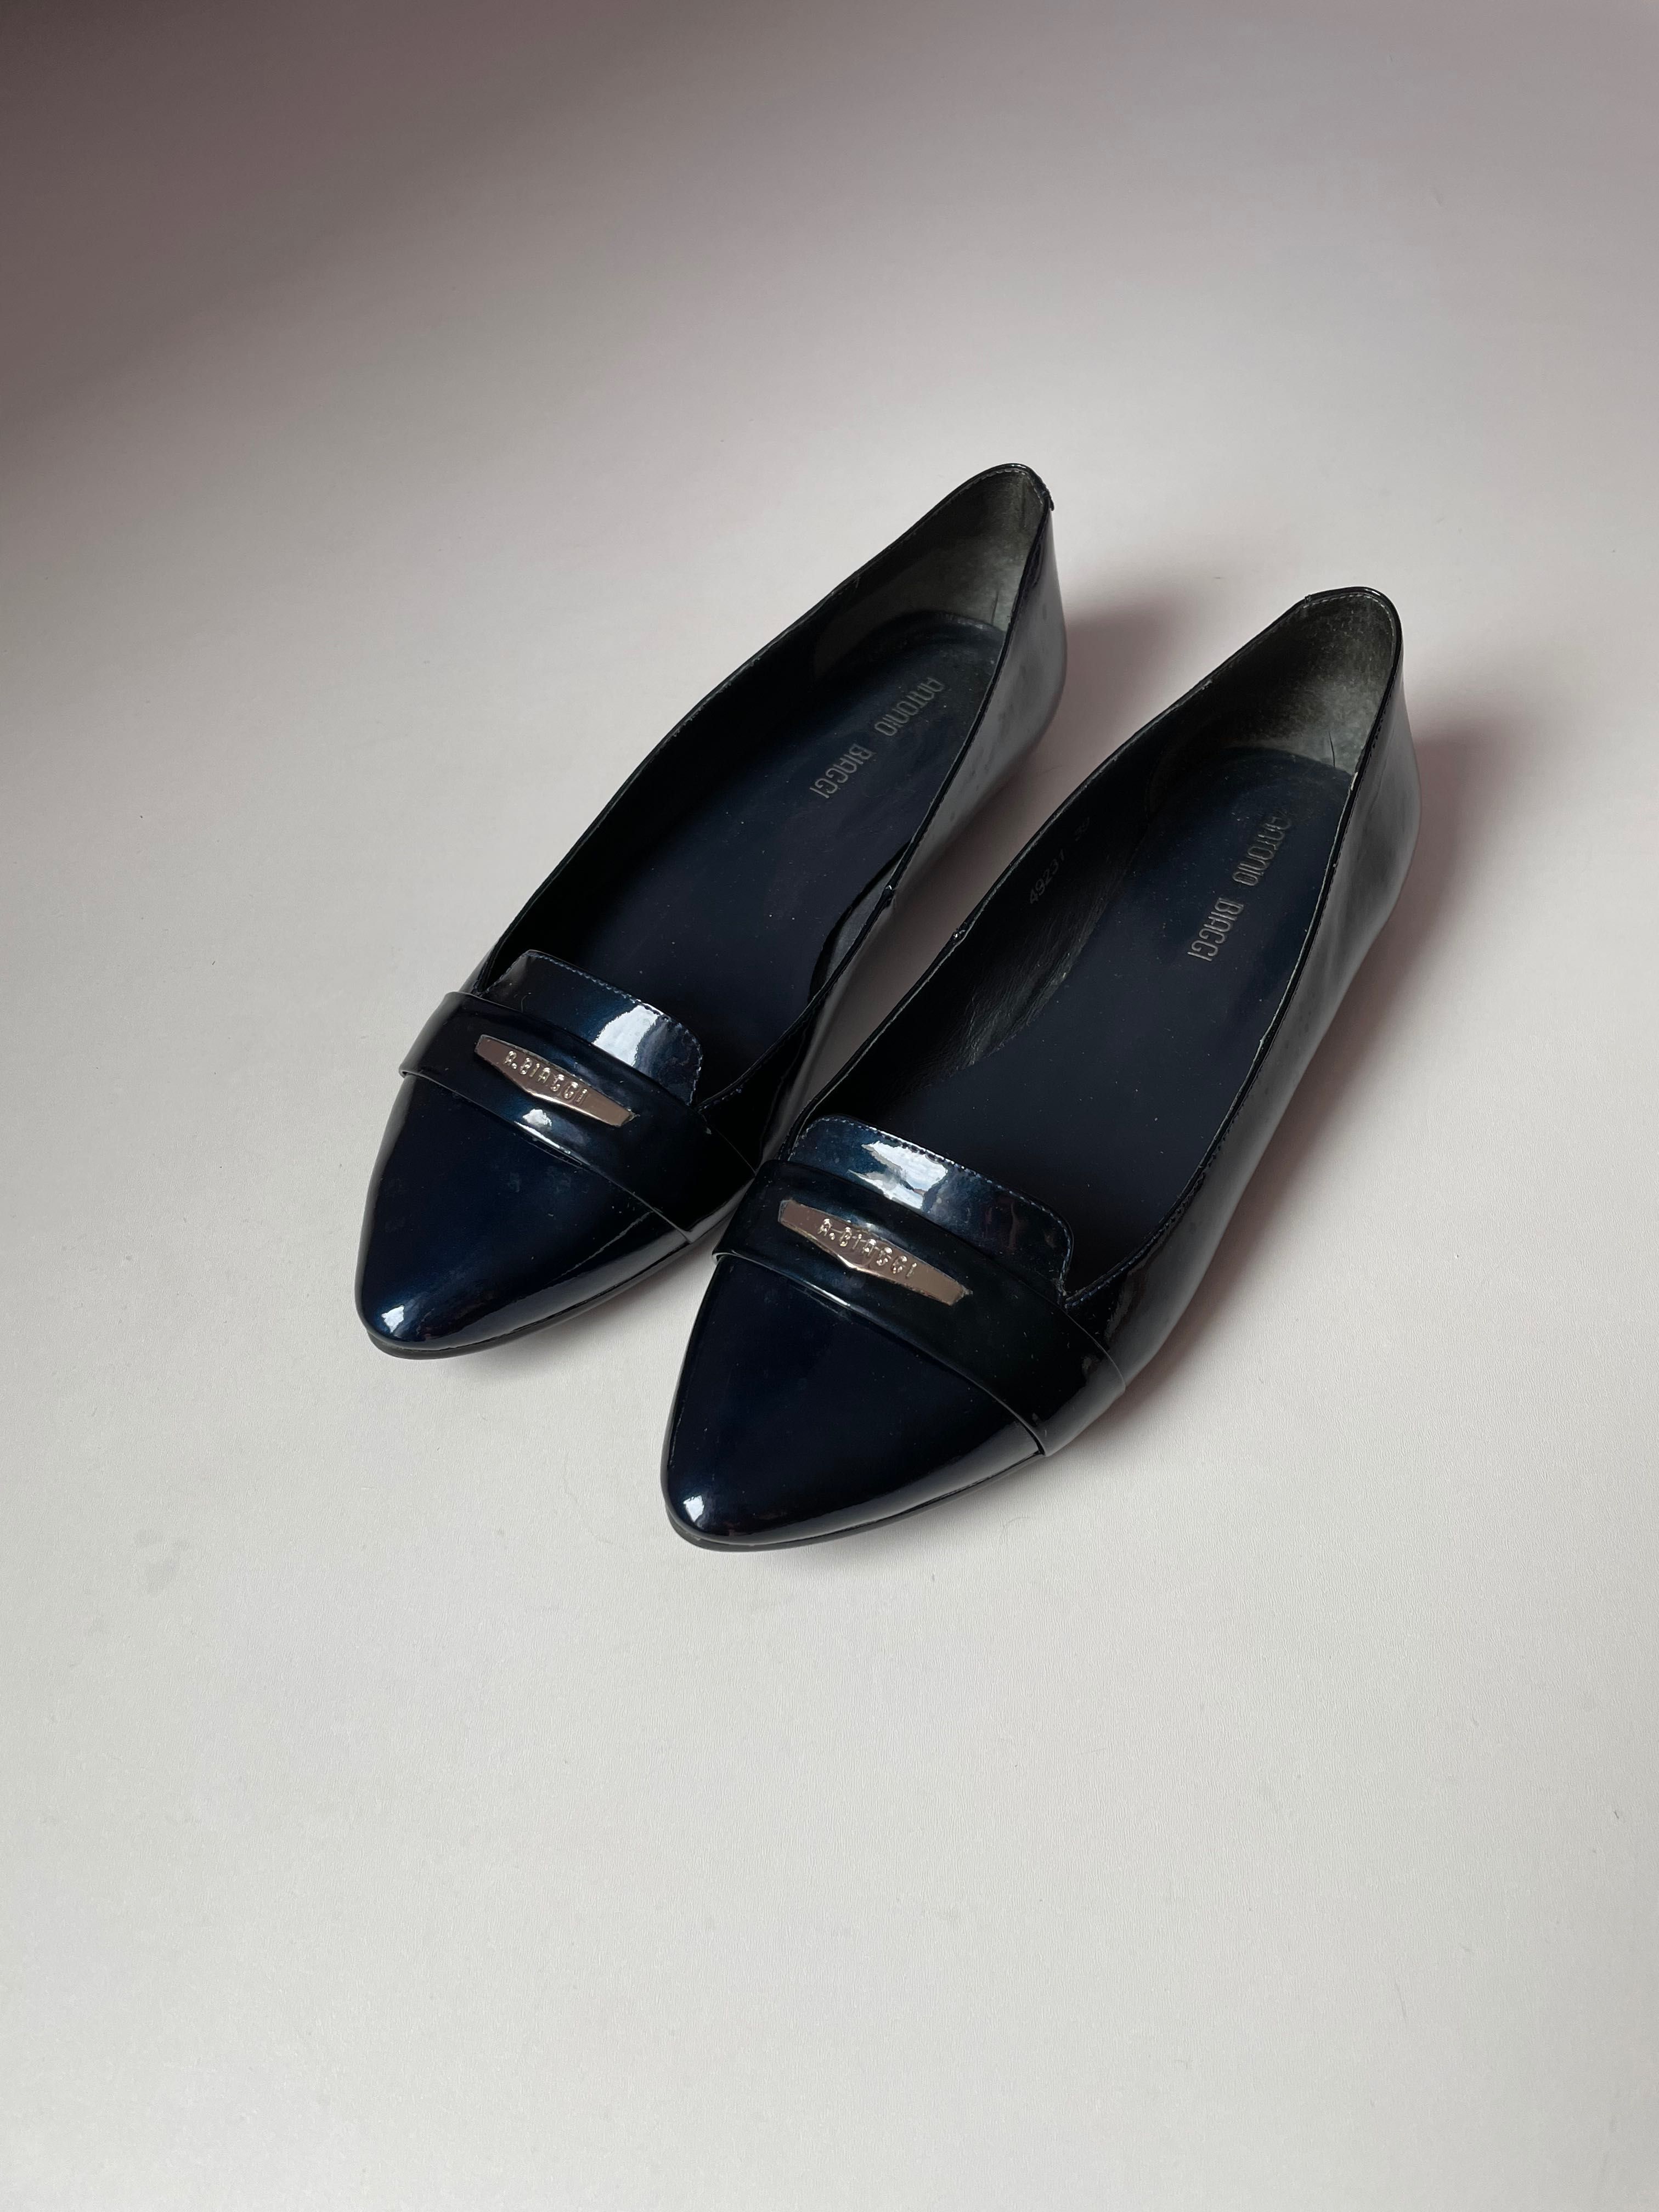 Балетки (туфли) синие лакированные Antonio Biaggi